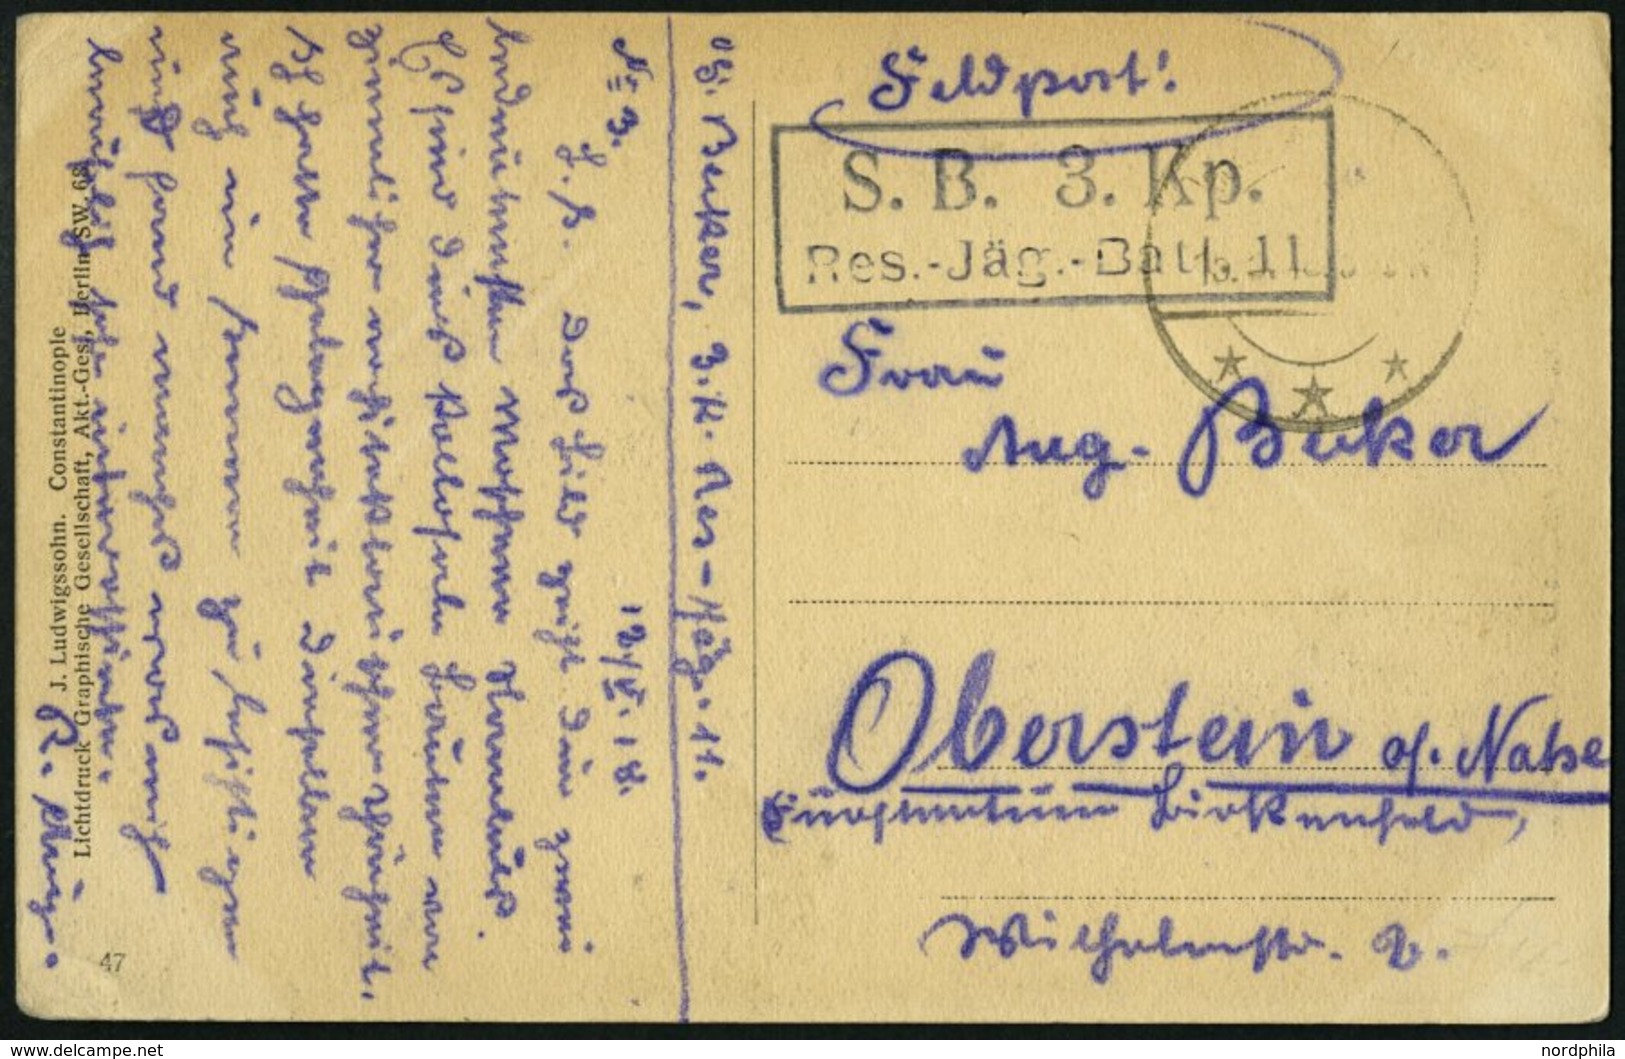 DP TÜRKEI 1918 Feldpoststation RAJAK Auf Feldpost-Ansichtskarte Der 3.Komp.Res.Jäg.Batt 11, Pracht - Turkey (offices)